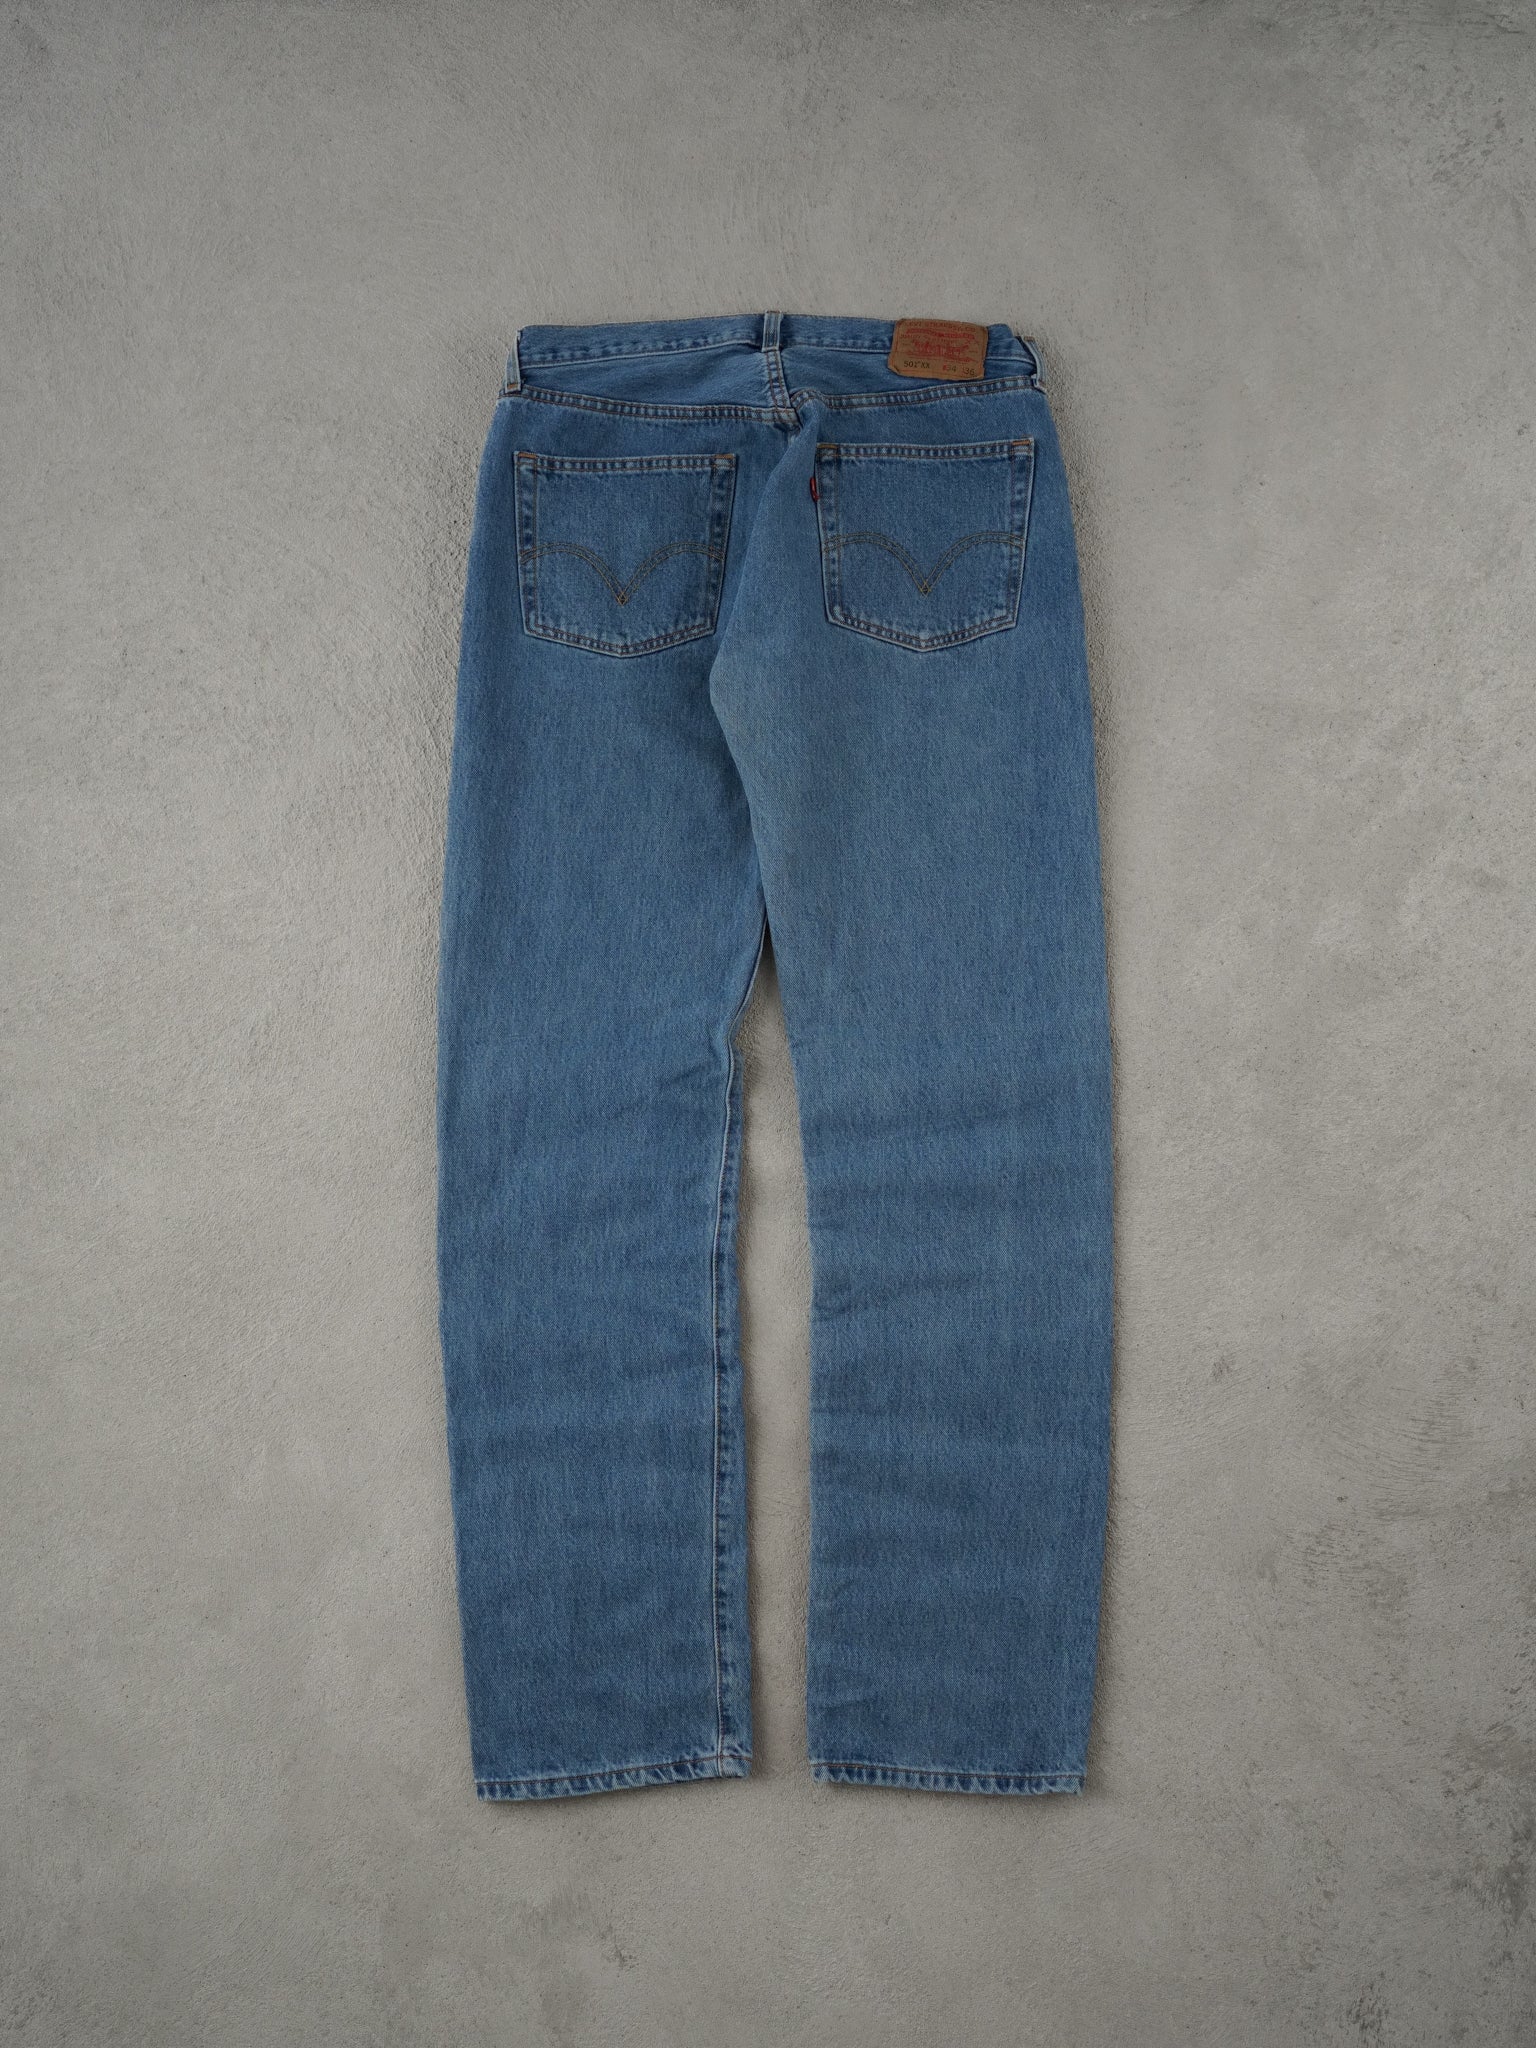 Vintage 90s Blue Levi's 501 Denim Jeans (32x34)